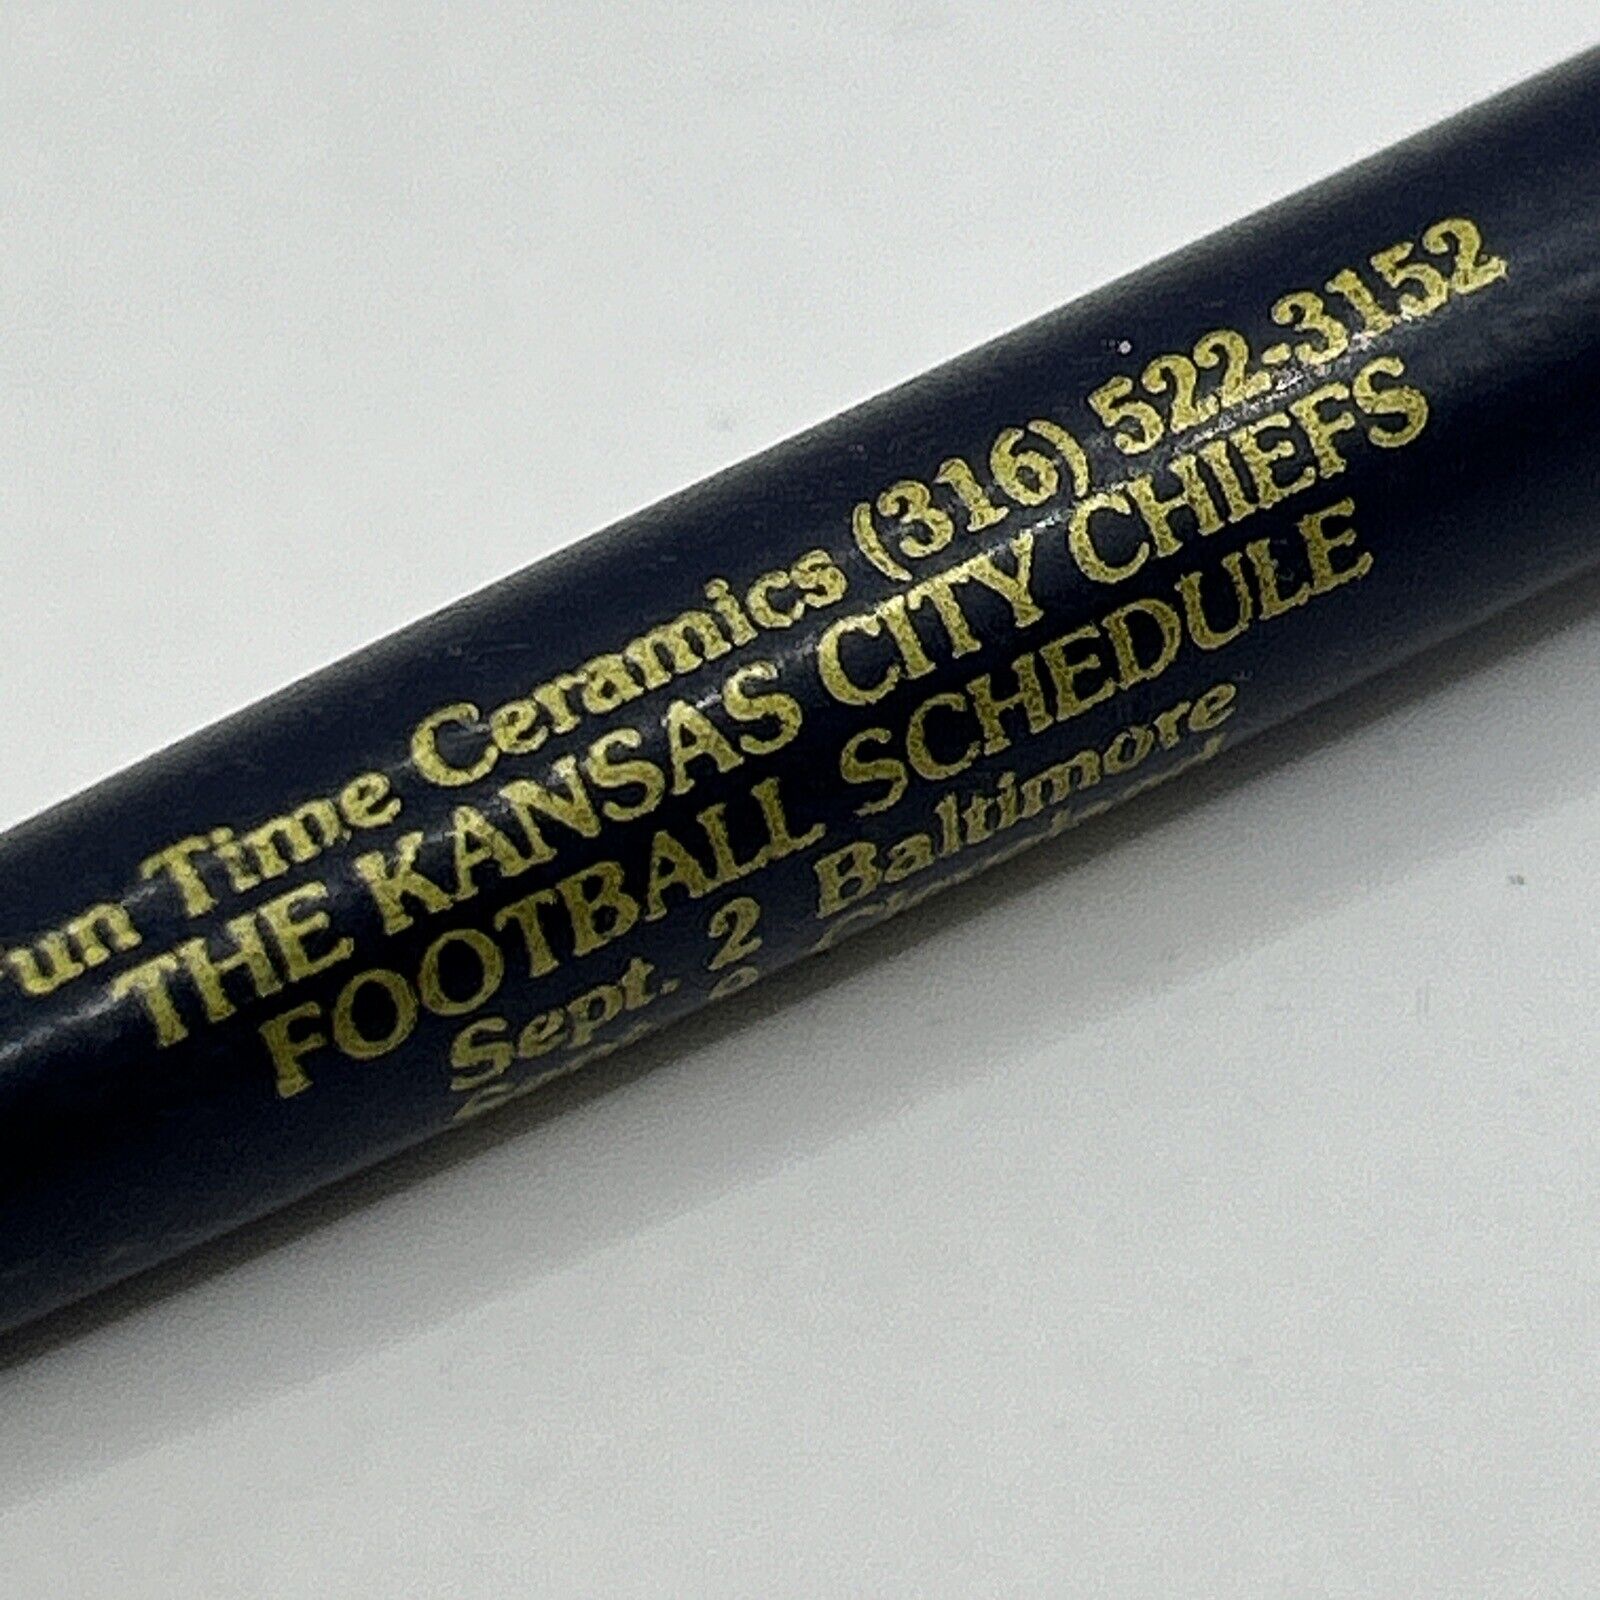 VTG Ballpoint Pen 1979 Kansas City Chiefs Football Schedule Fun Time Ceramics